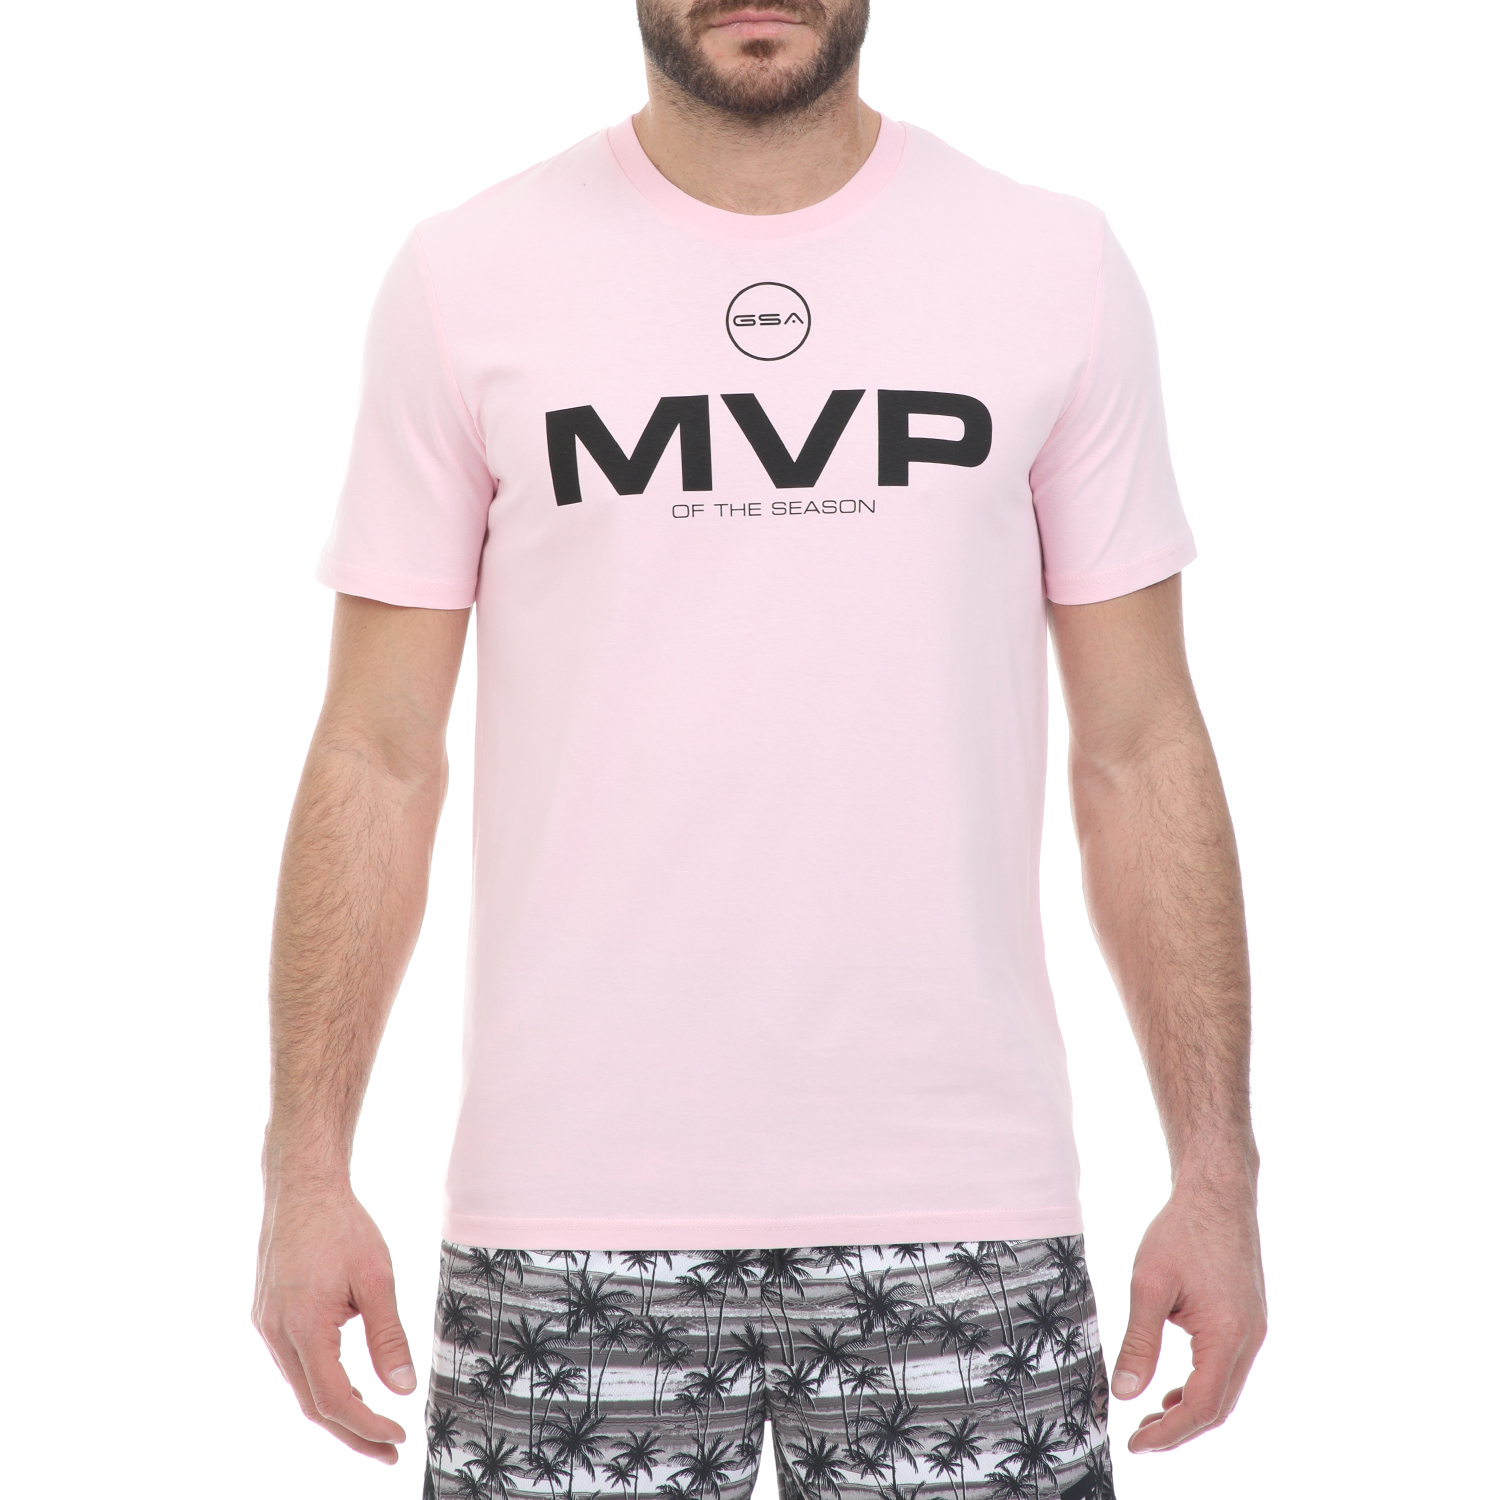 Ανδρικά/Ρούχα/Μπλούζες/Κοντομάνικες GSA - Ανδρικό t-shirt GSA ORGANIC PLUS ροζ